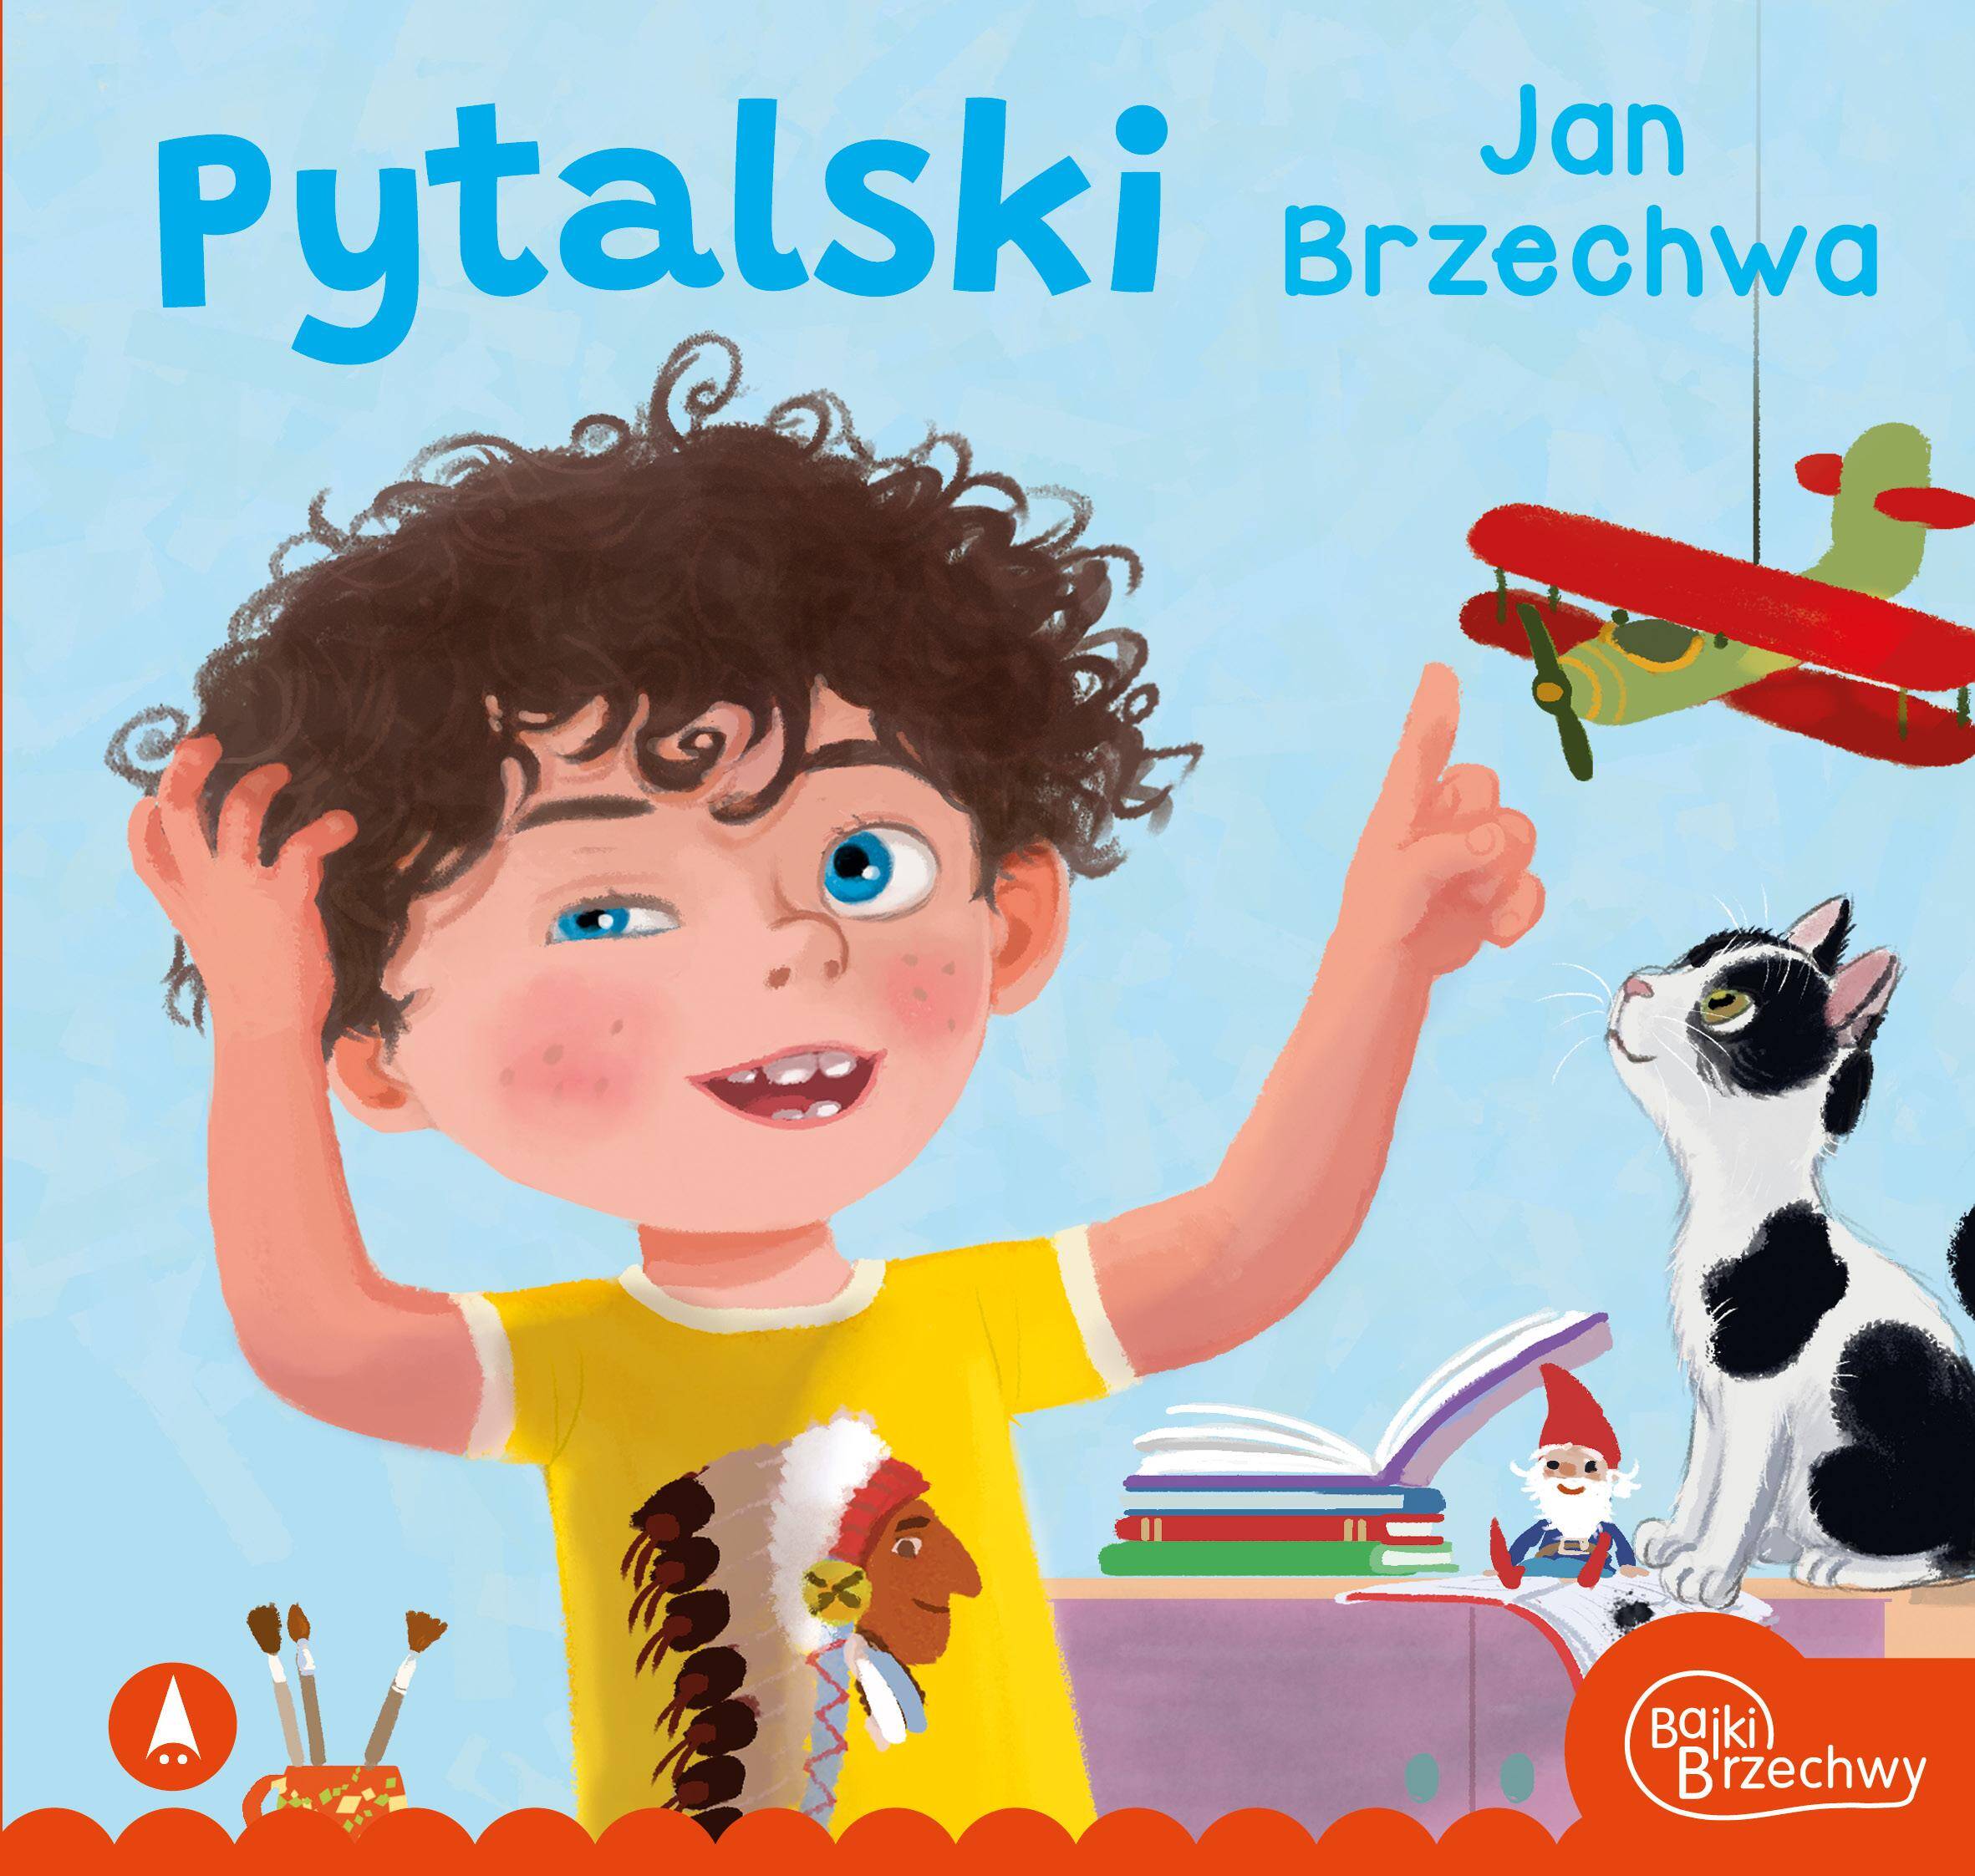 Pytalski Jan Brzechwa